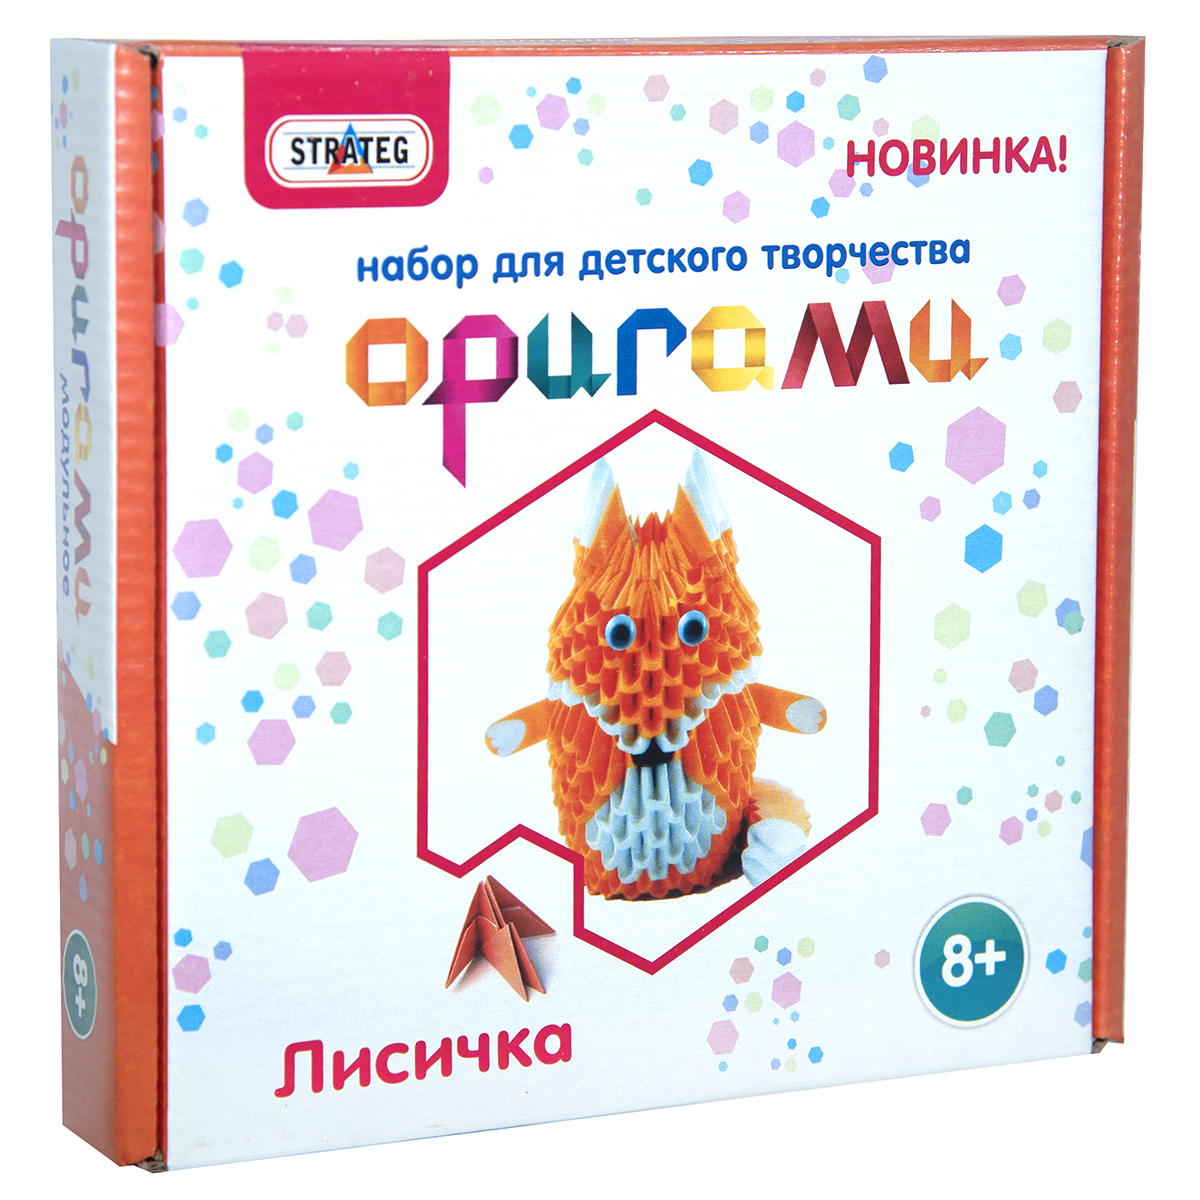 Модульное оригами Strateg Лисичка на русском языке (203-11)